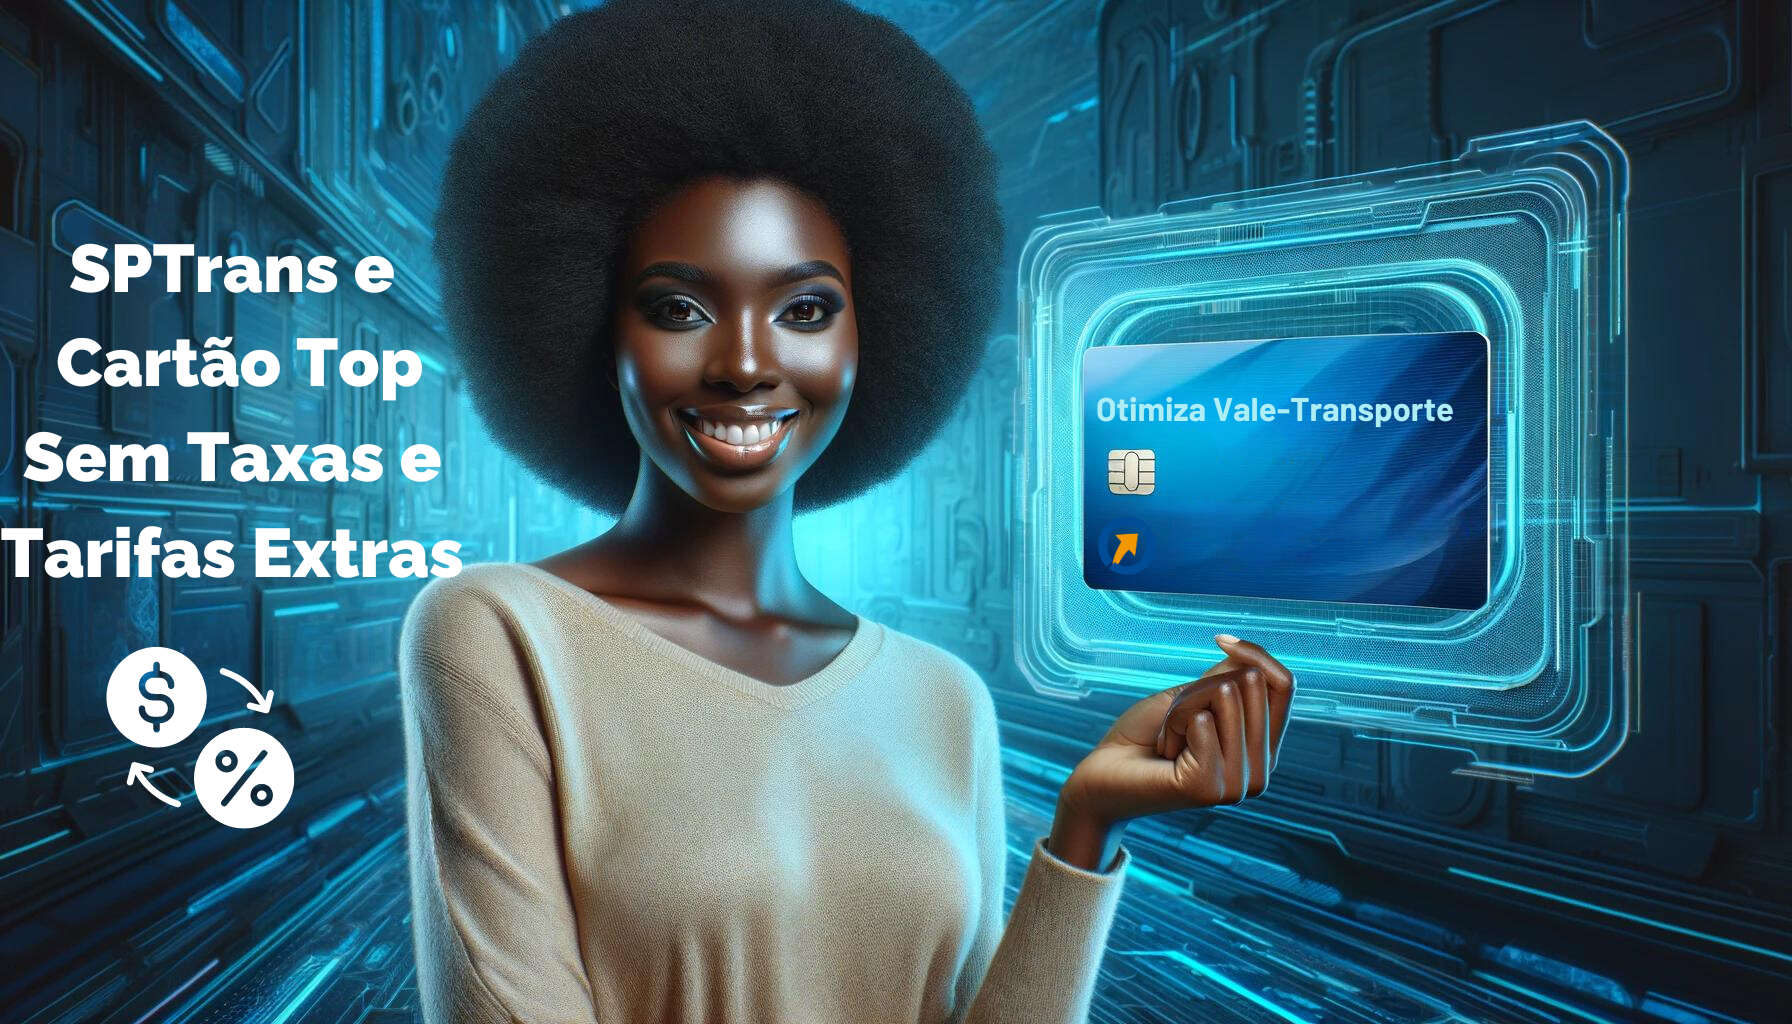 Uma mulher de ascendência africana segura um cartão de vale-transporte Otimiza, sorrindo, à esquerda de um fundo azul futurista, com amplo espaço à direita para texto.